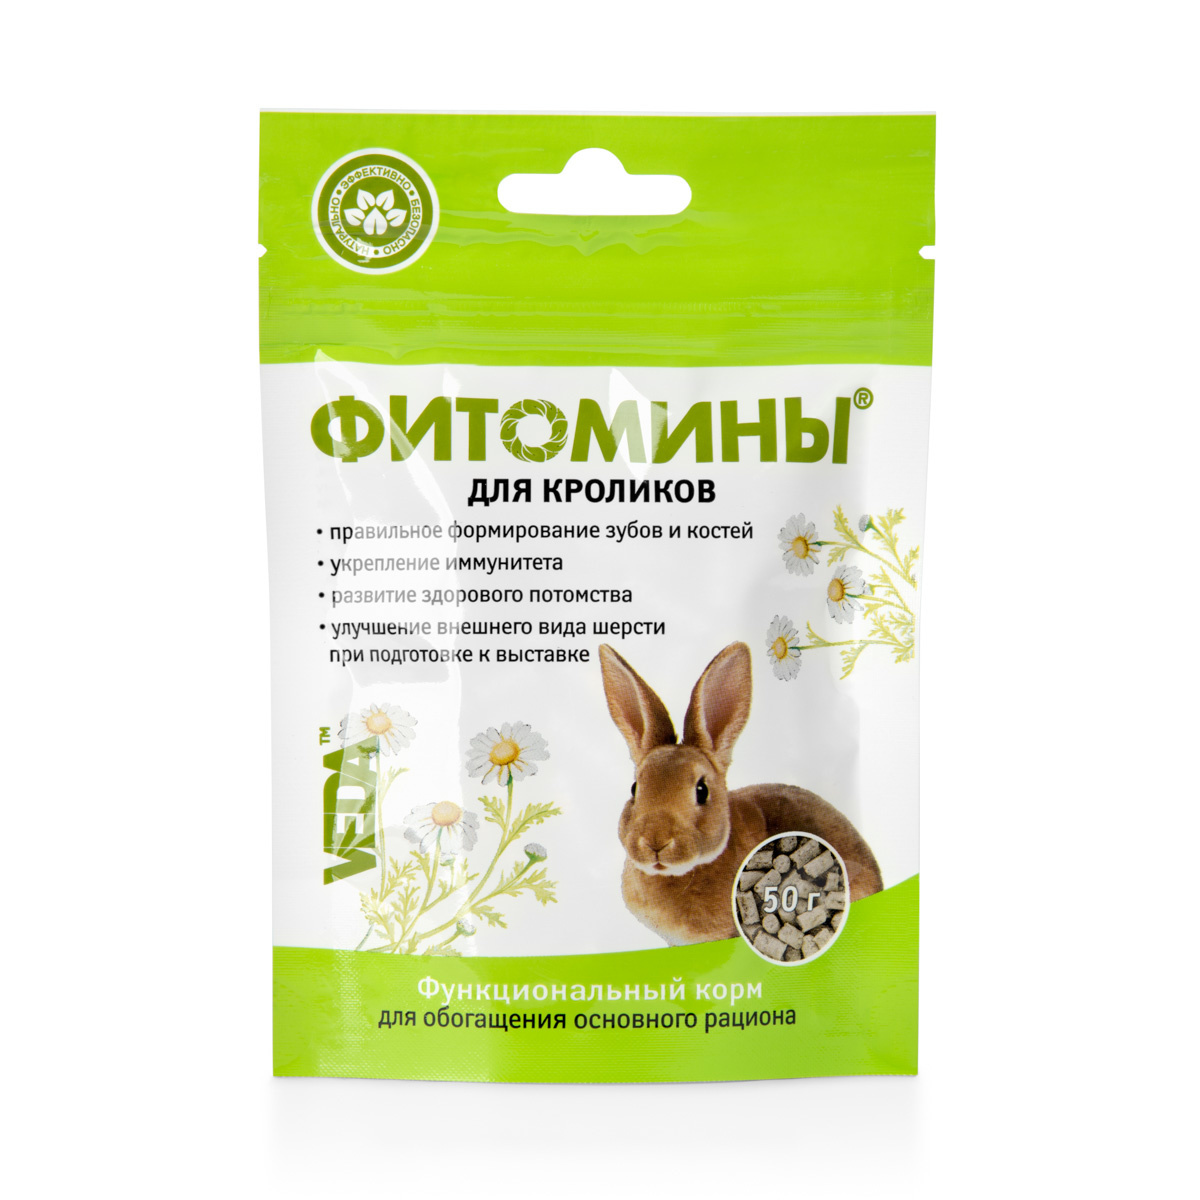 Веда Веда фитомины для кроликов (50 г) цена и фото